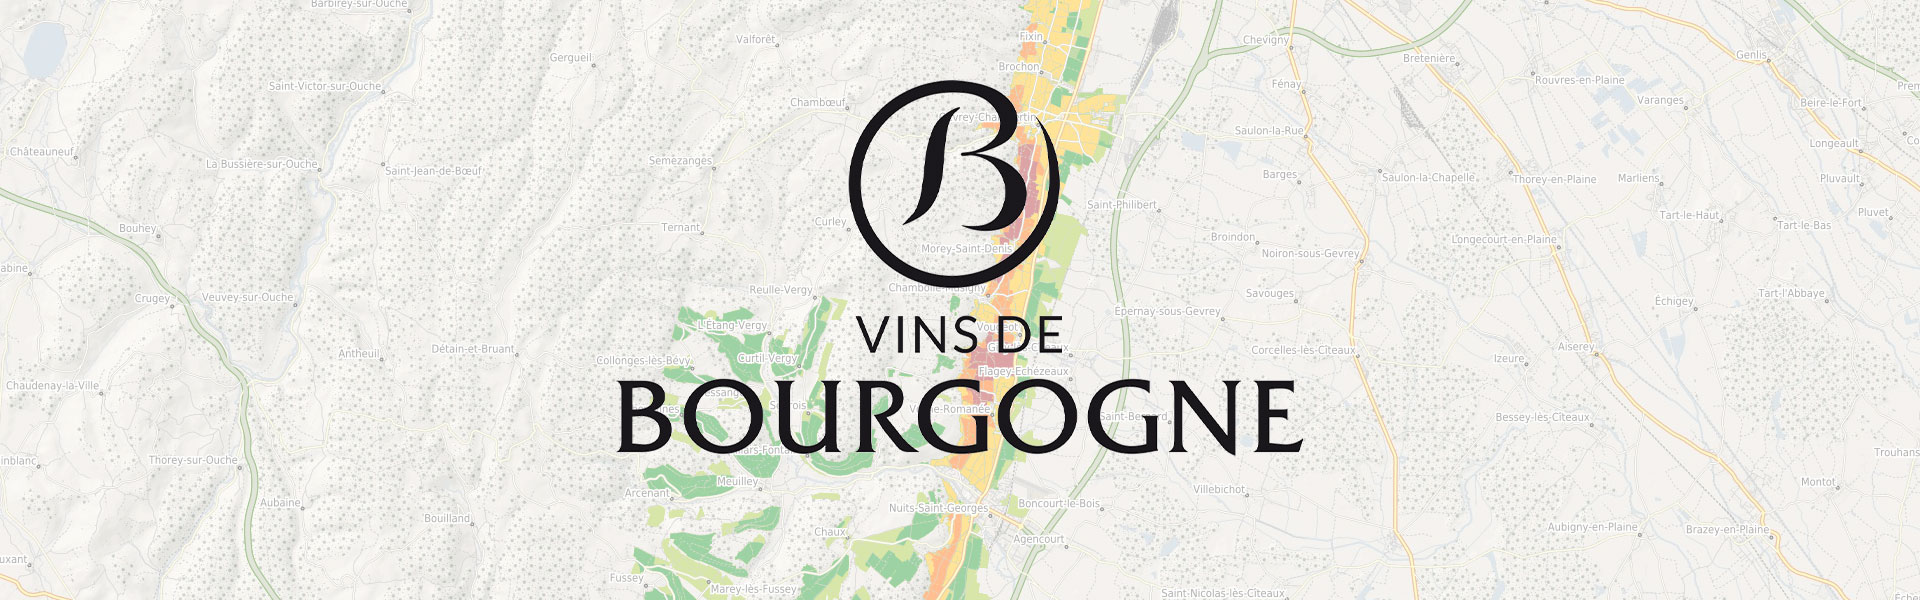 Évolutions de l'application Bourgogne Maps